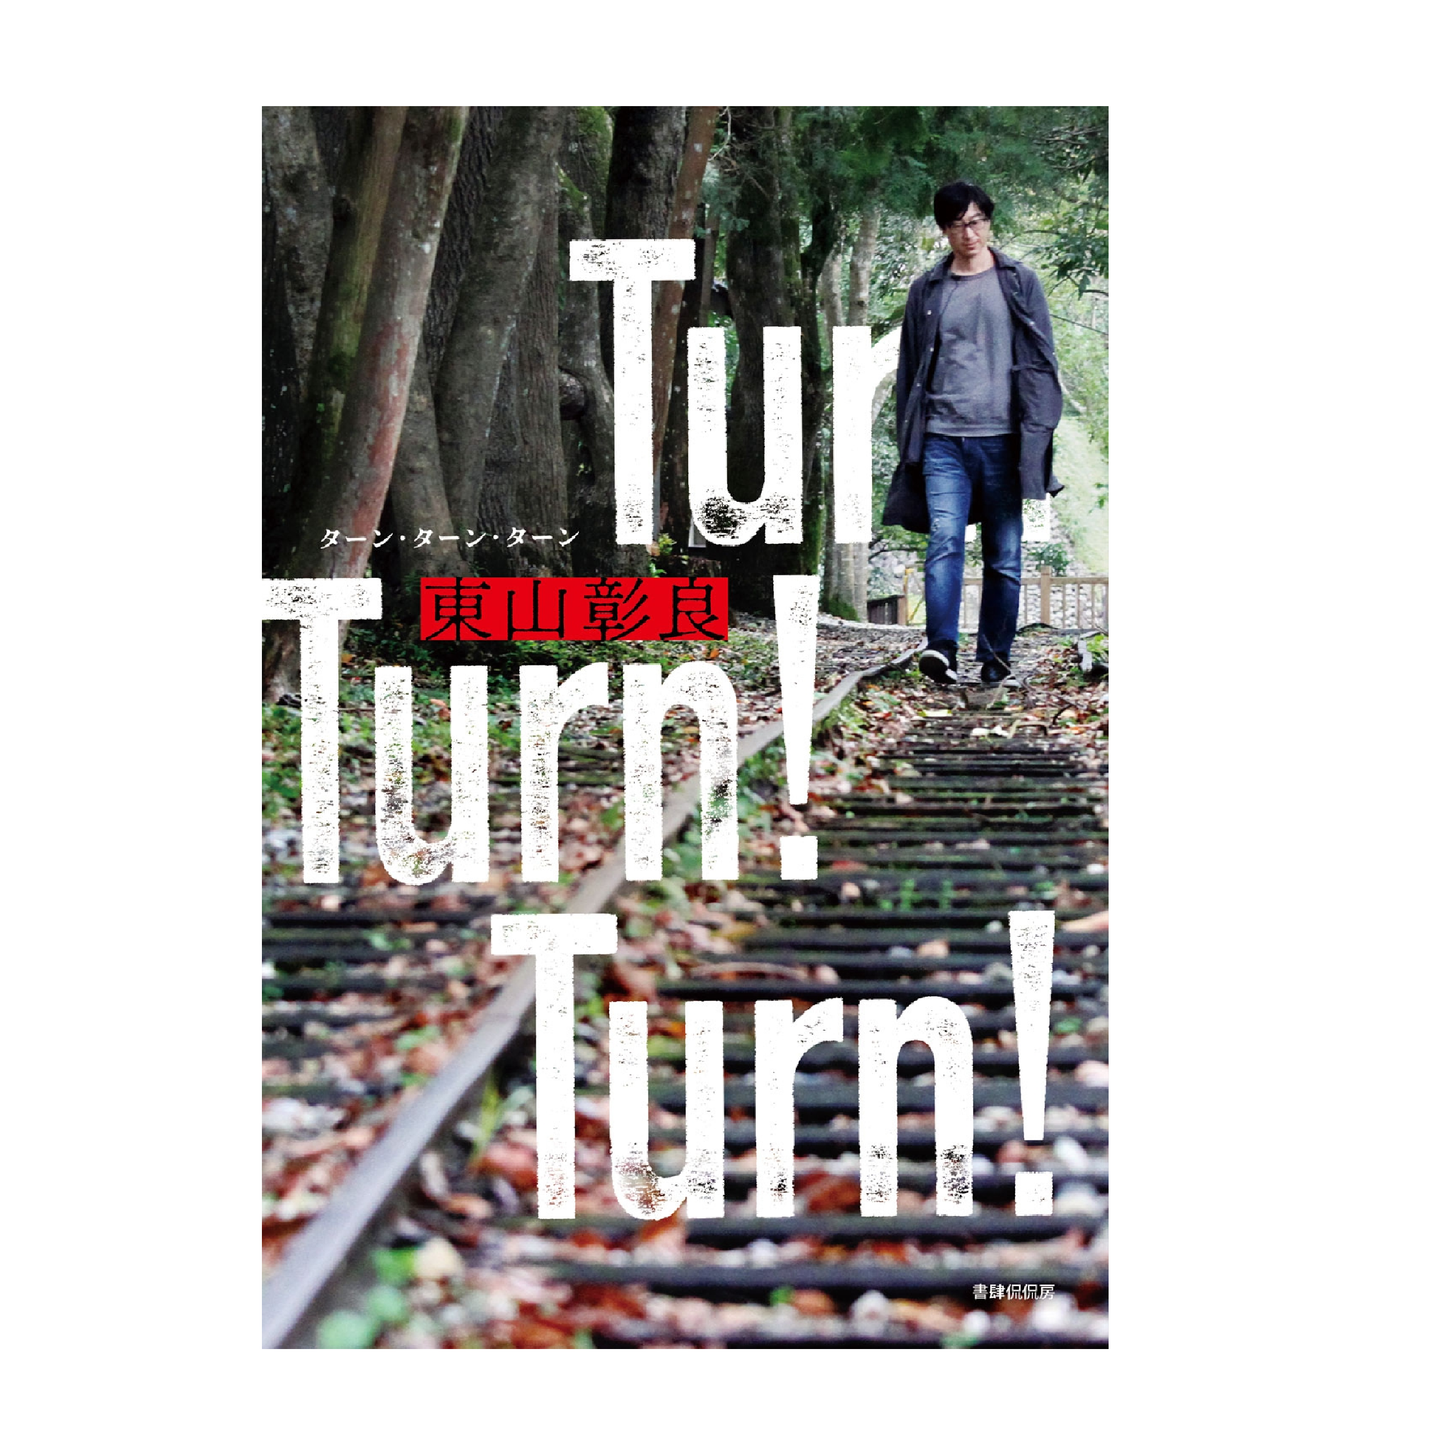 Turn! Turn! Turn!